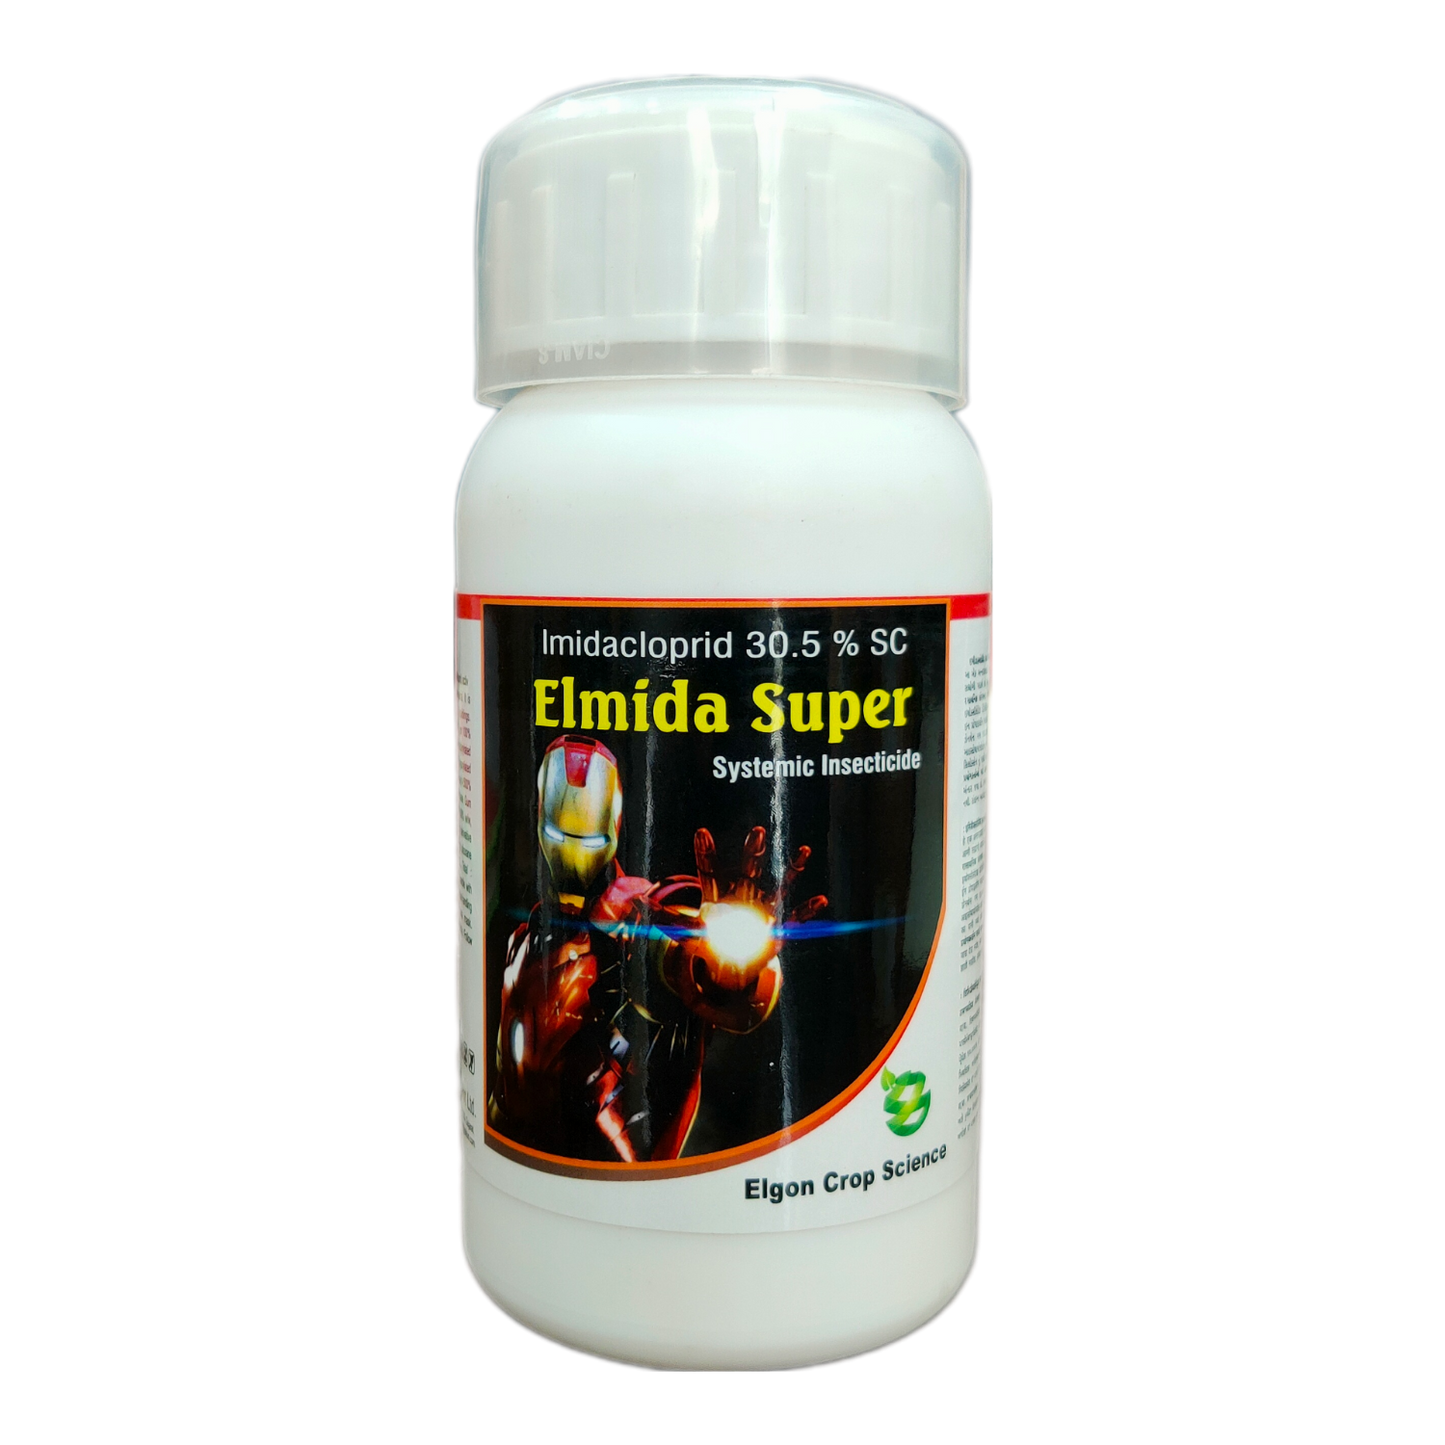 Elmida Super - Imidacloprid 30.5% SC Insecticide